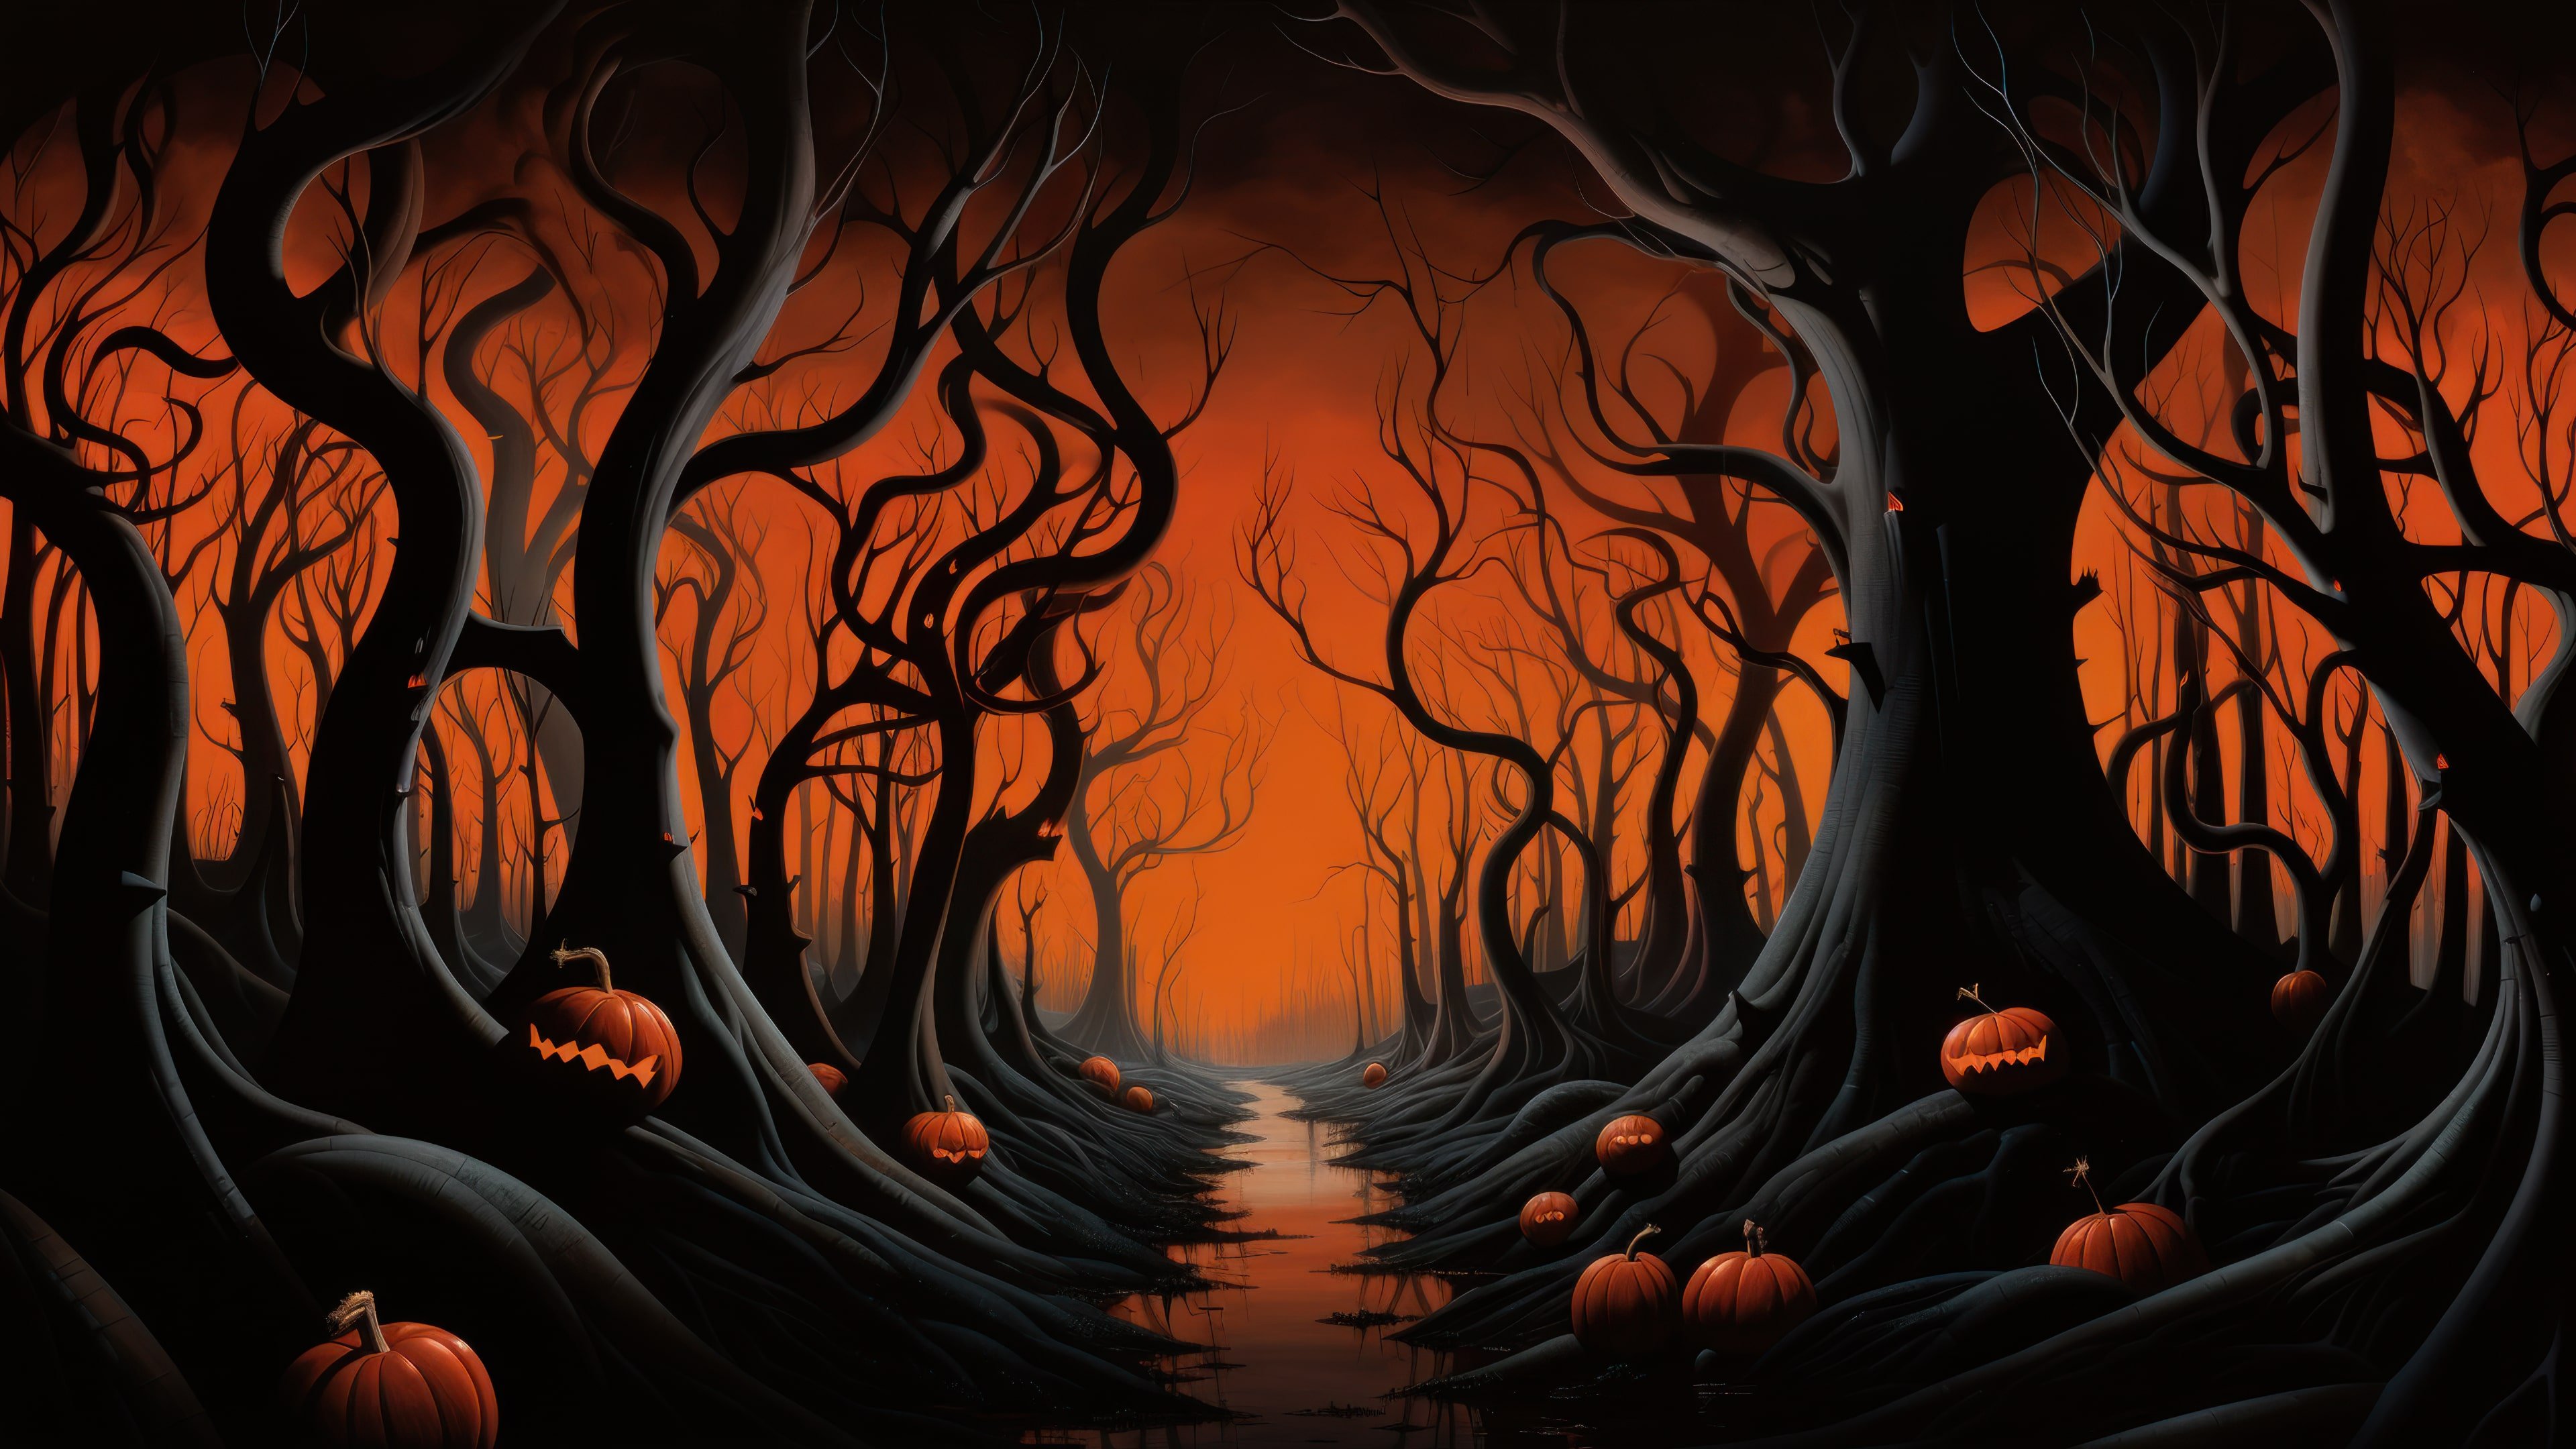 October Wallpaper 4K, Halloween background